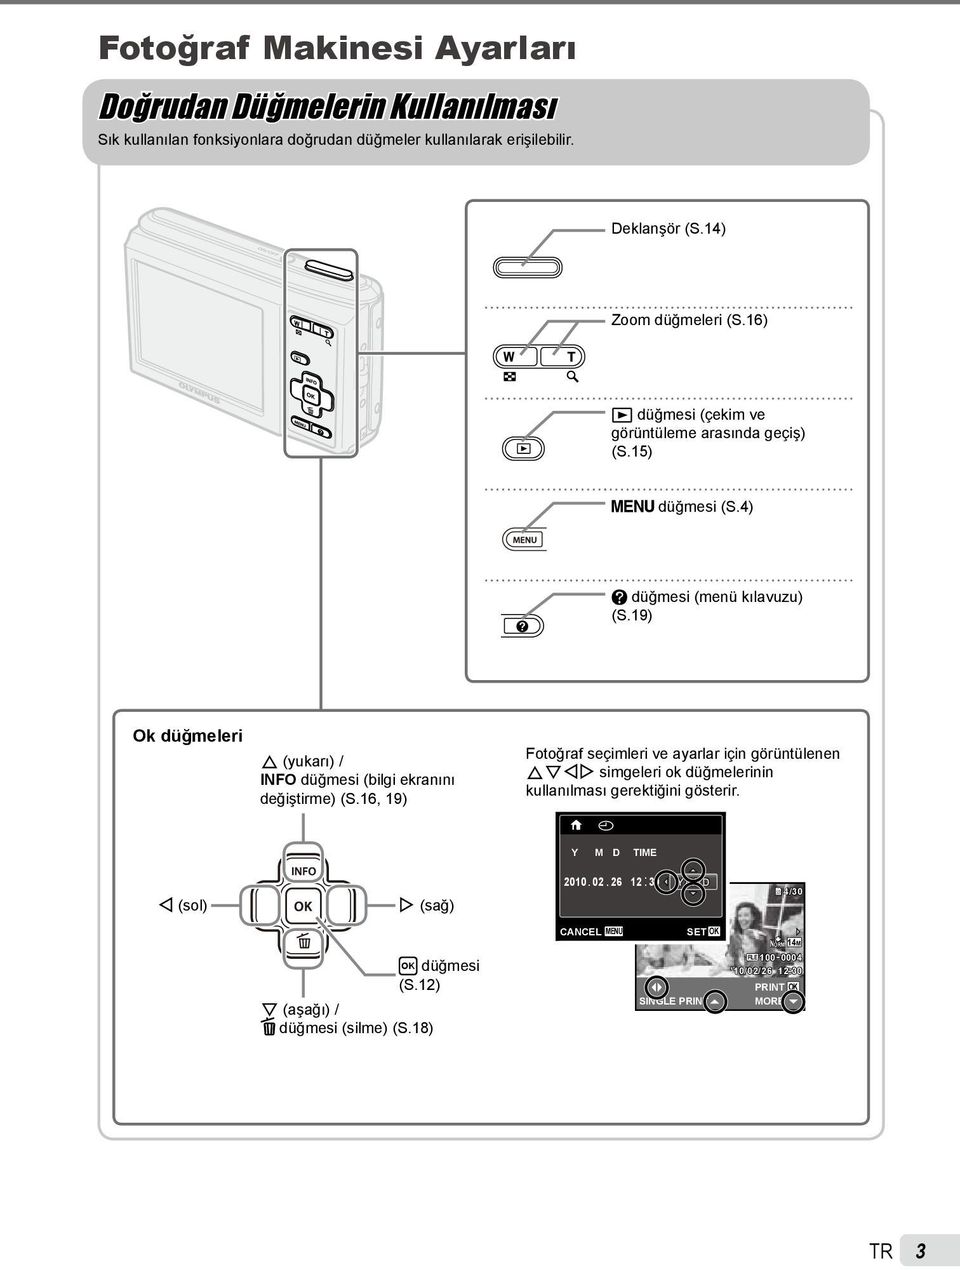 19) Ok düğmeleri F (yukarı) / INFO düğmesi (bilgi ekranını değiştirme) (S.